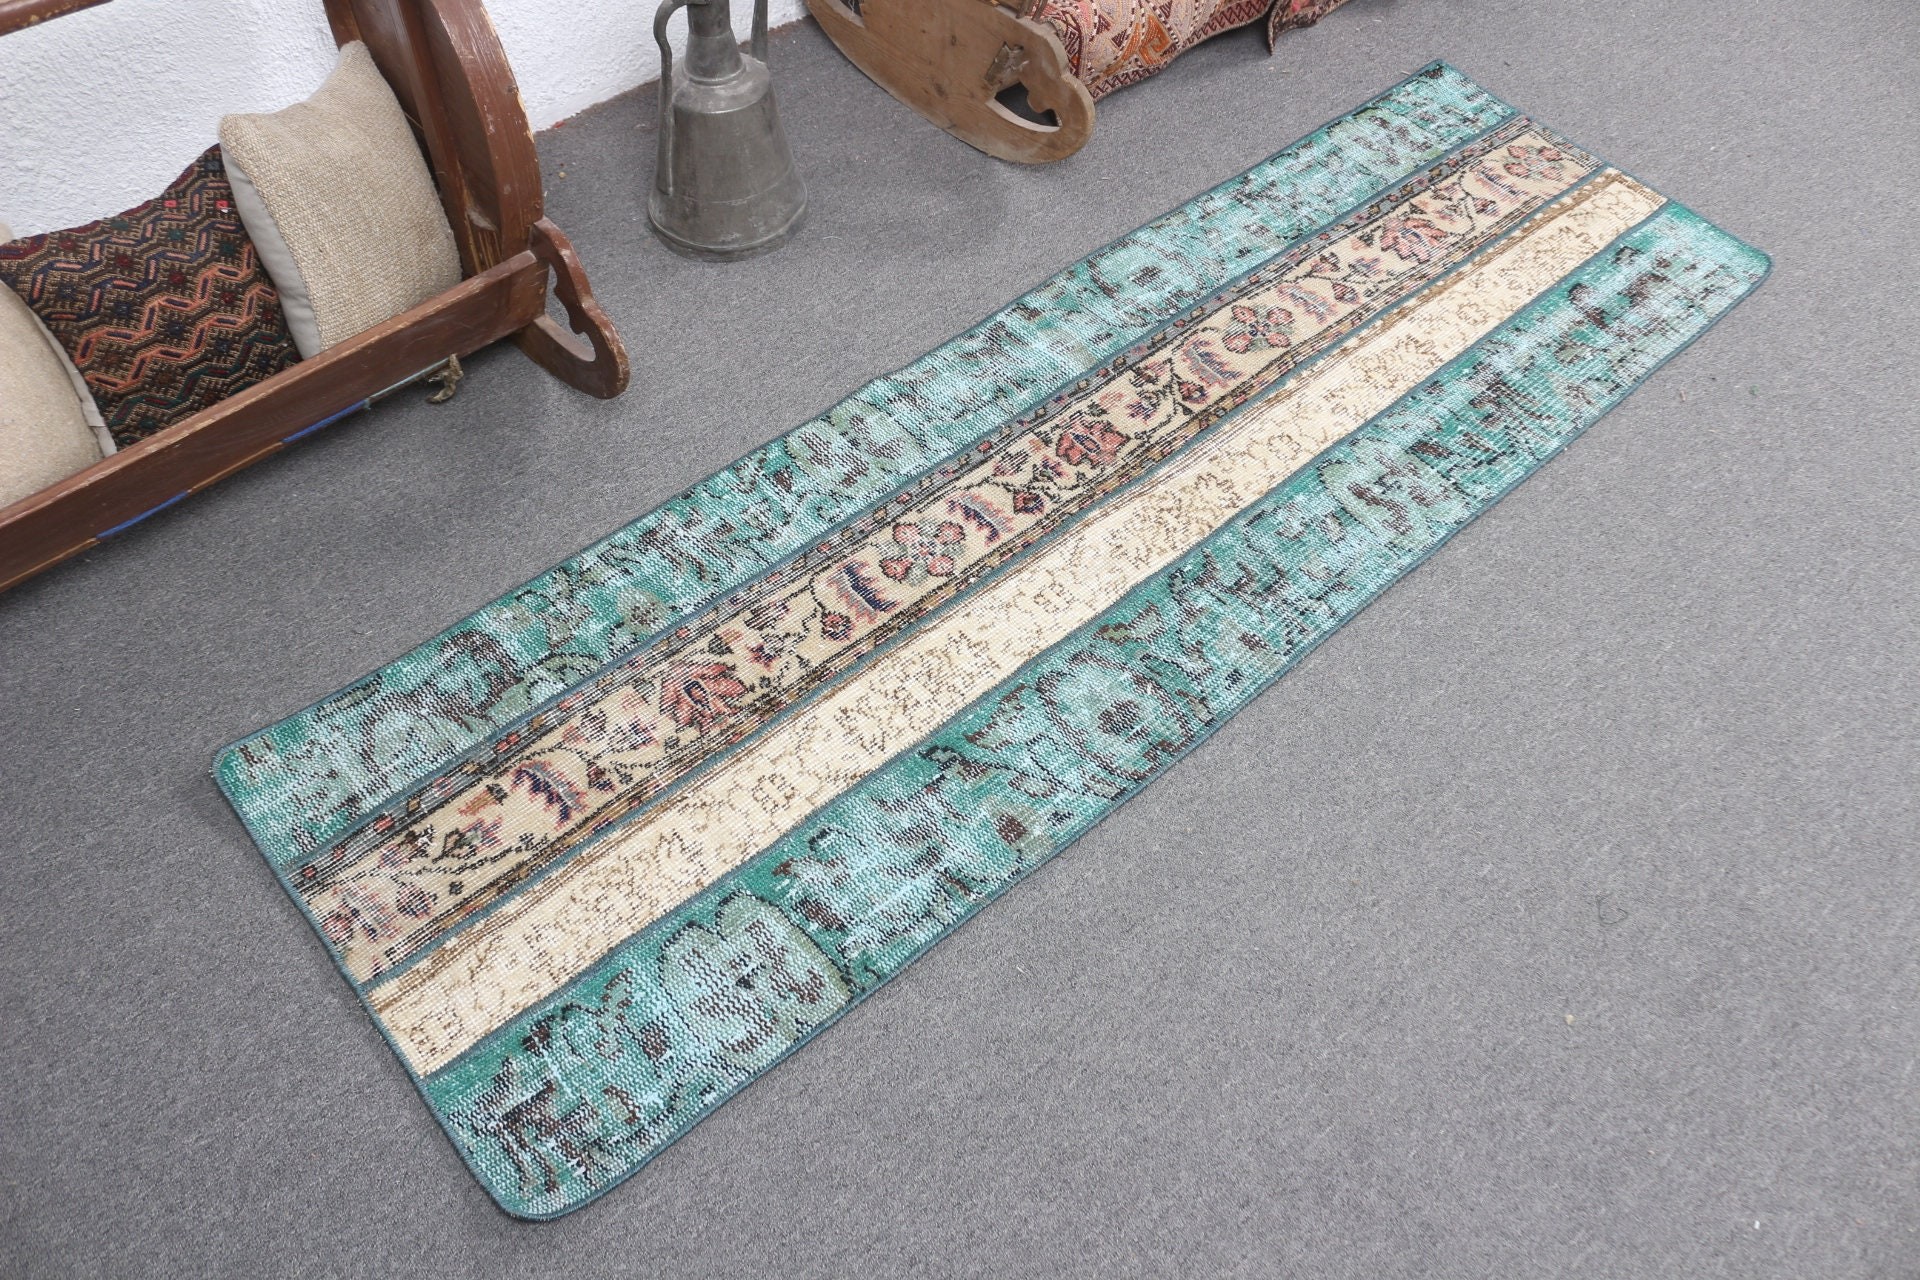 Green Anatolian Rugs, 1.9x6.1 ft Runner Rugs, Vintage Rug, Bedroom Rug, Hallway Rugs, Pastel Rug, Turkish Rug, Antique Rugs, Rugs for Stair